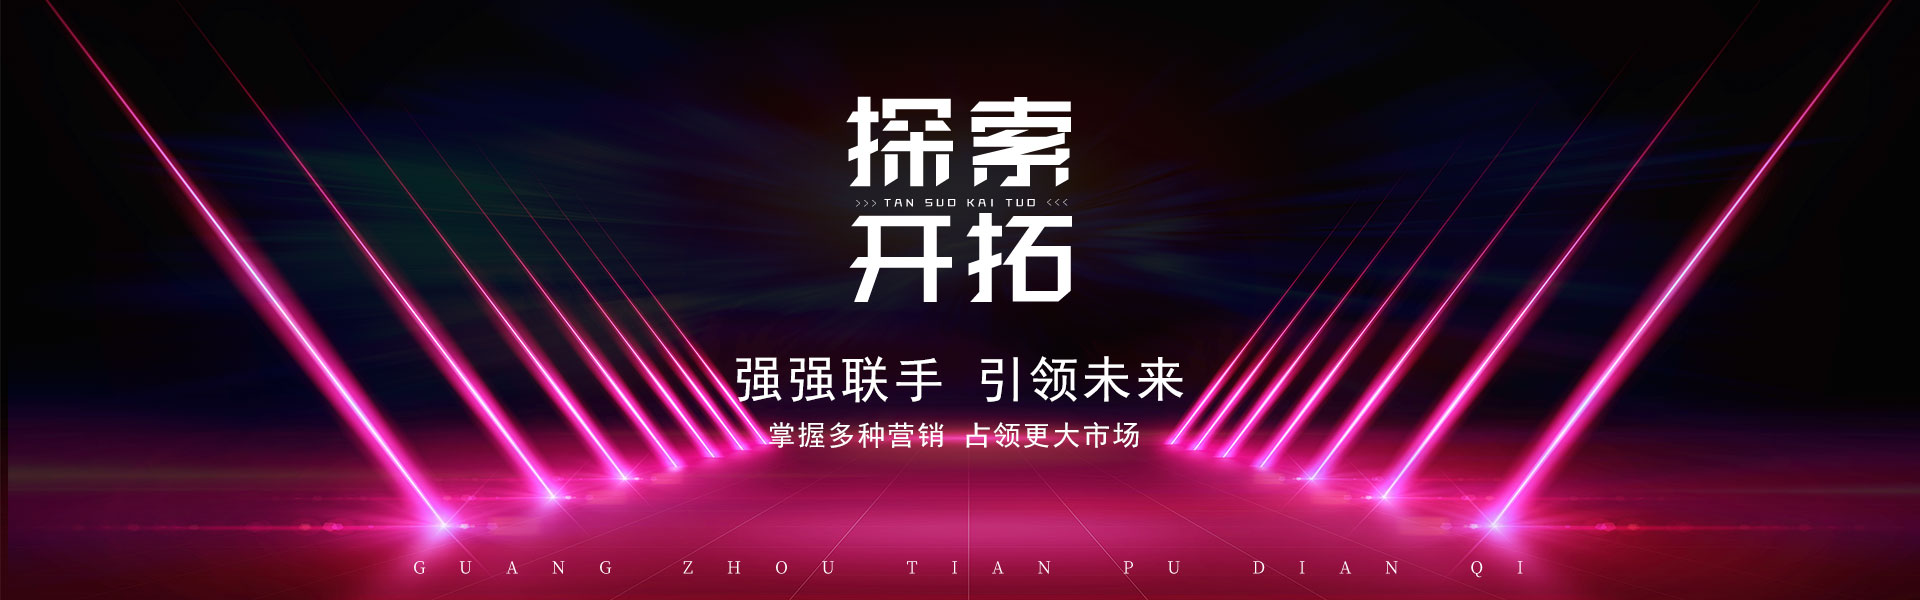 案例呈现_广州市天谱电器有限公司万利达品牌网站